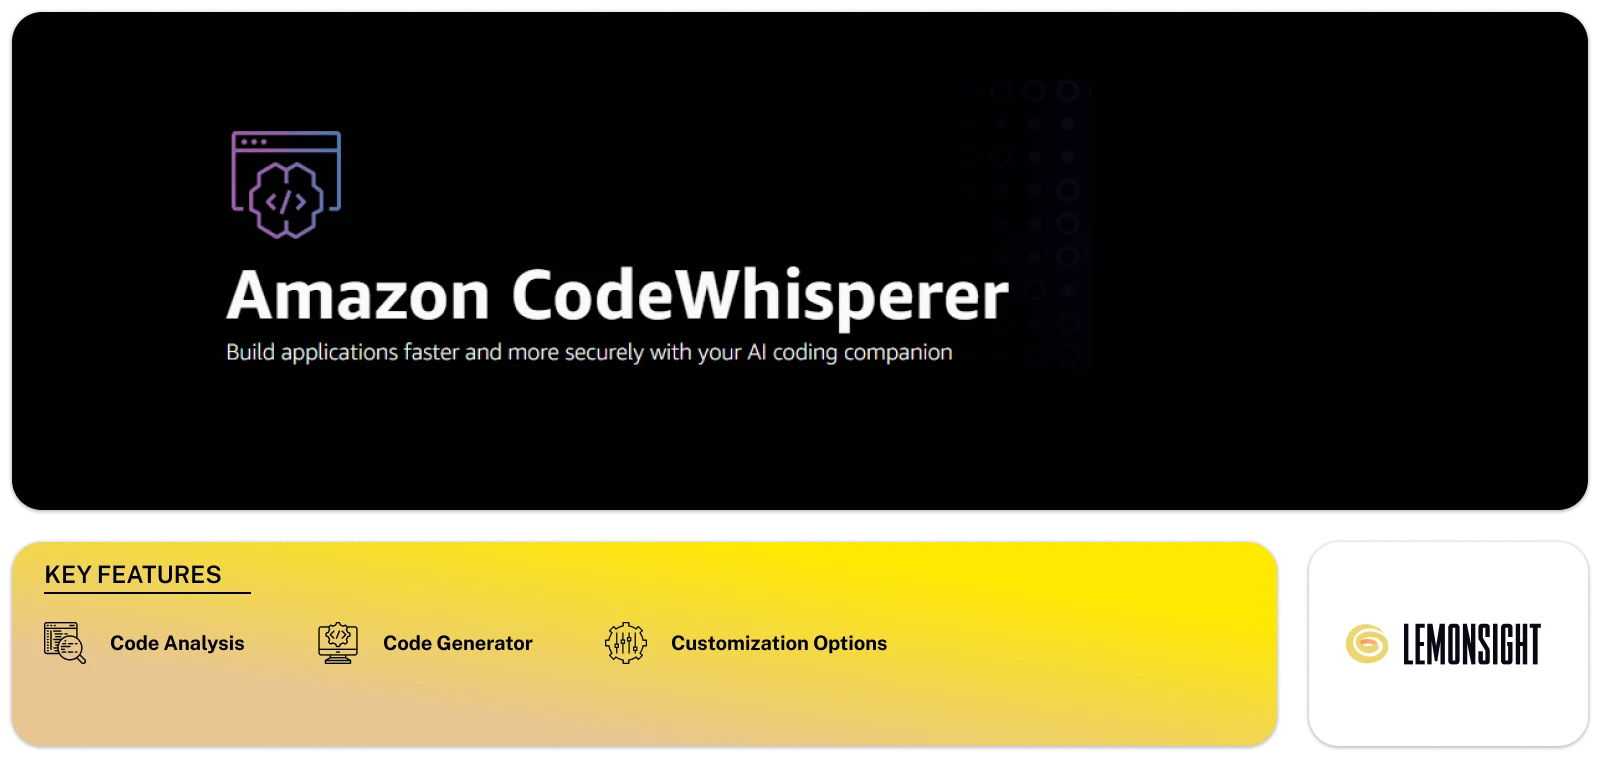 Amazon Code Whisperer Feature Image